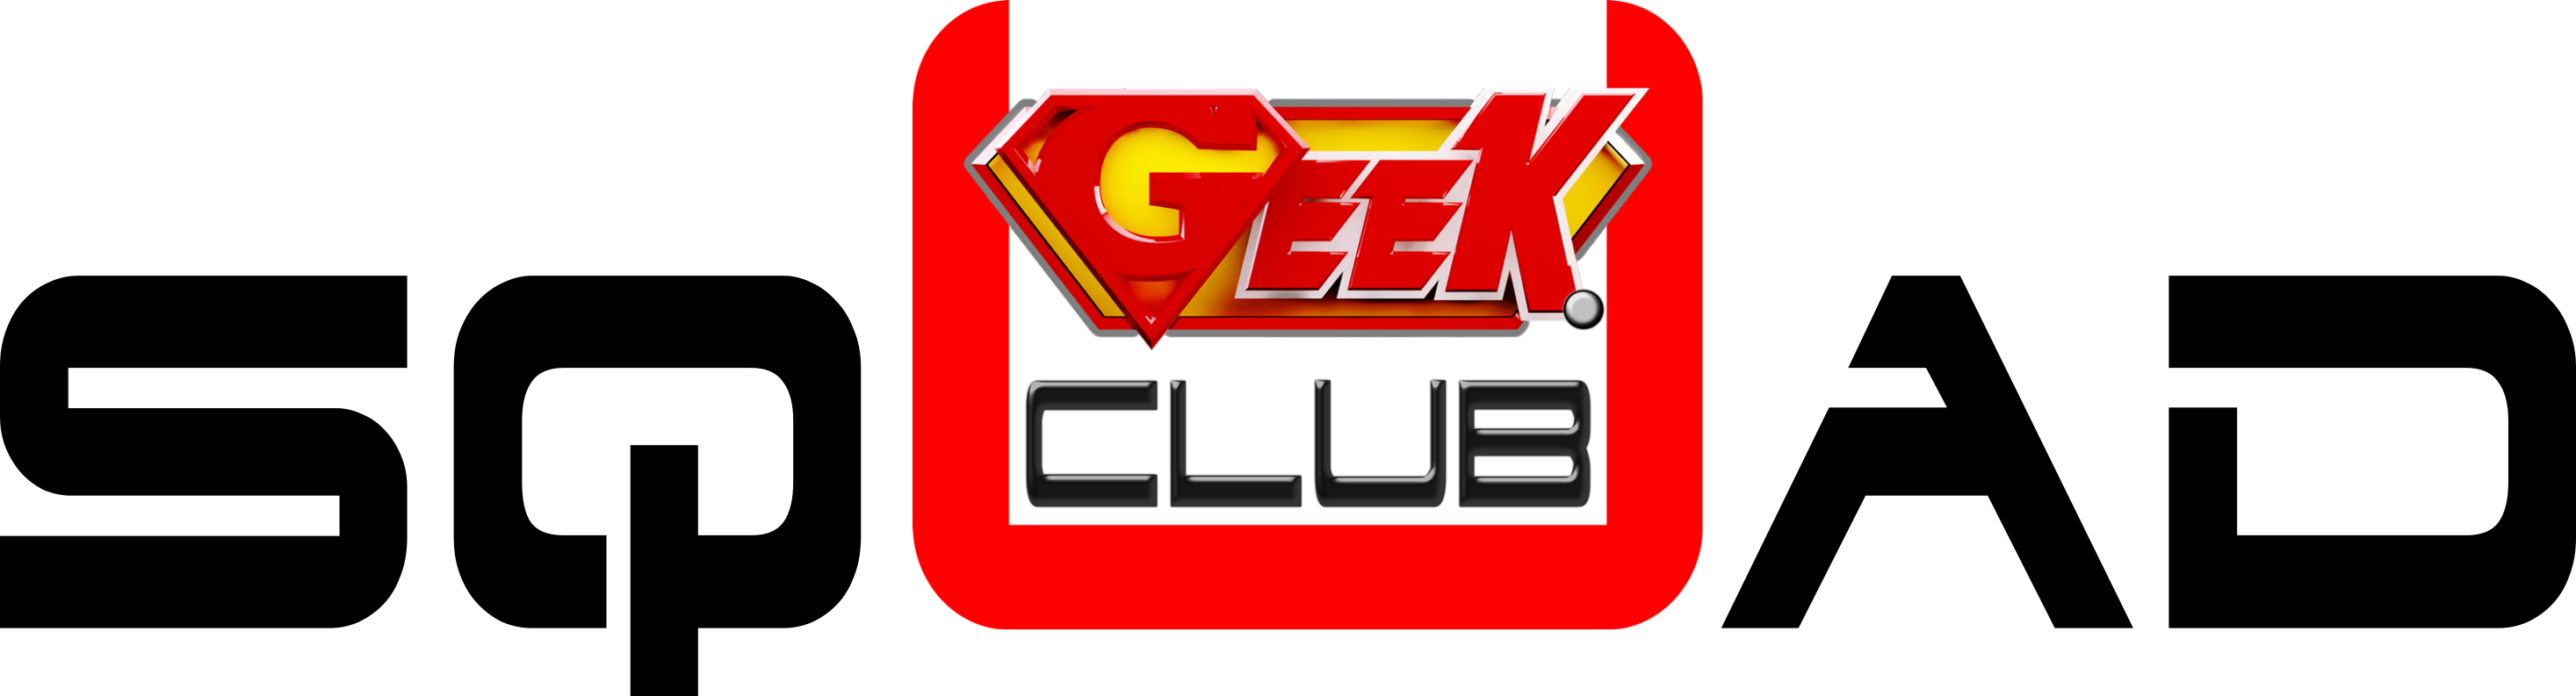 Ugeek Club - Geek (2933x793), Png Download